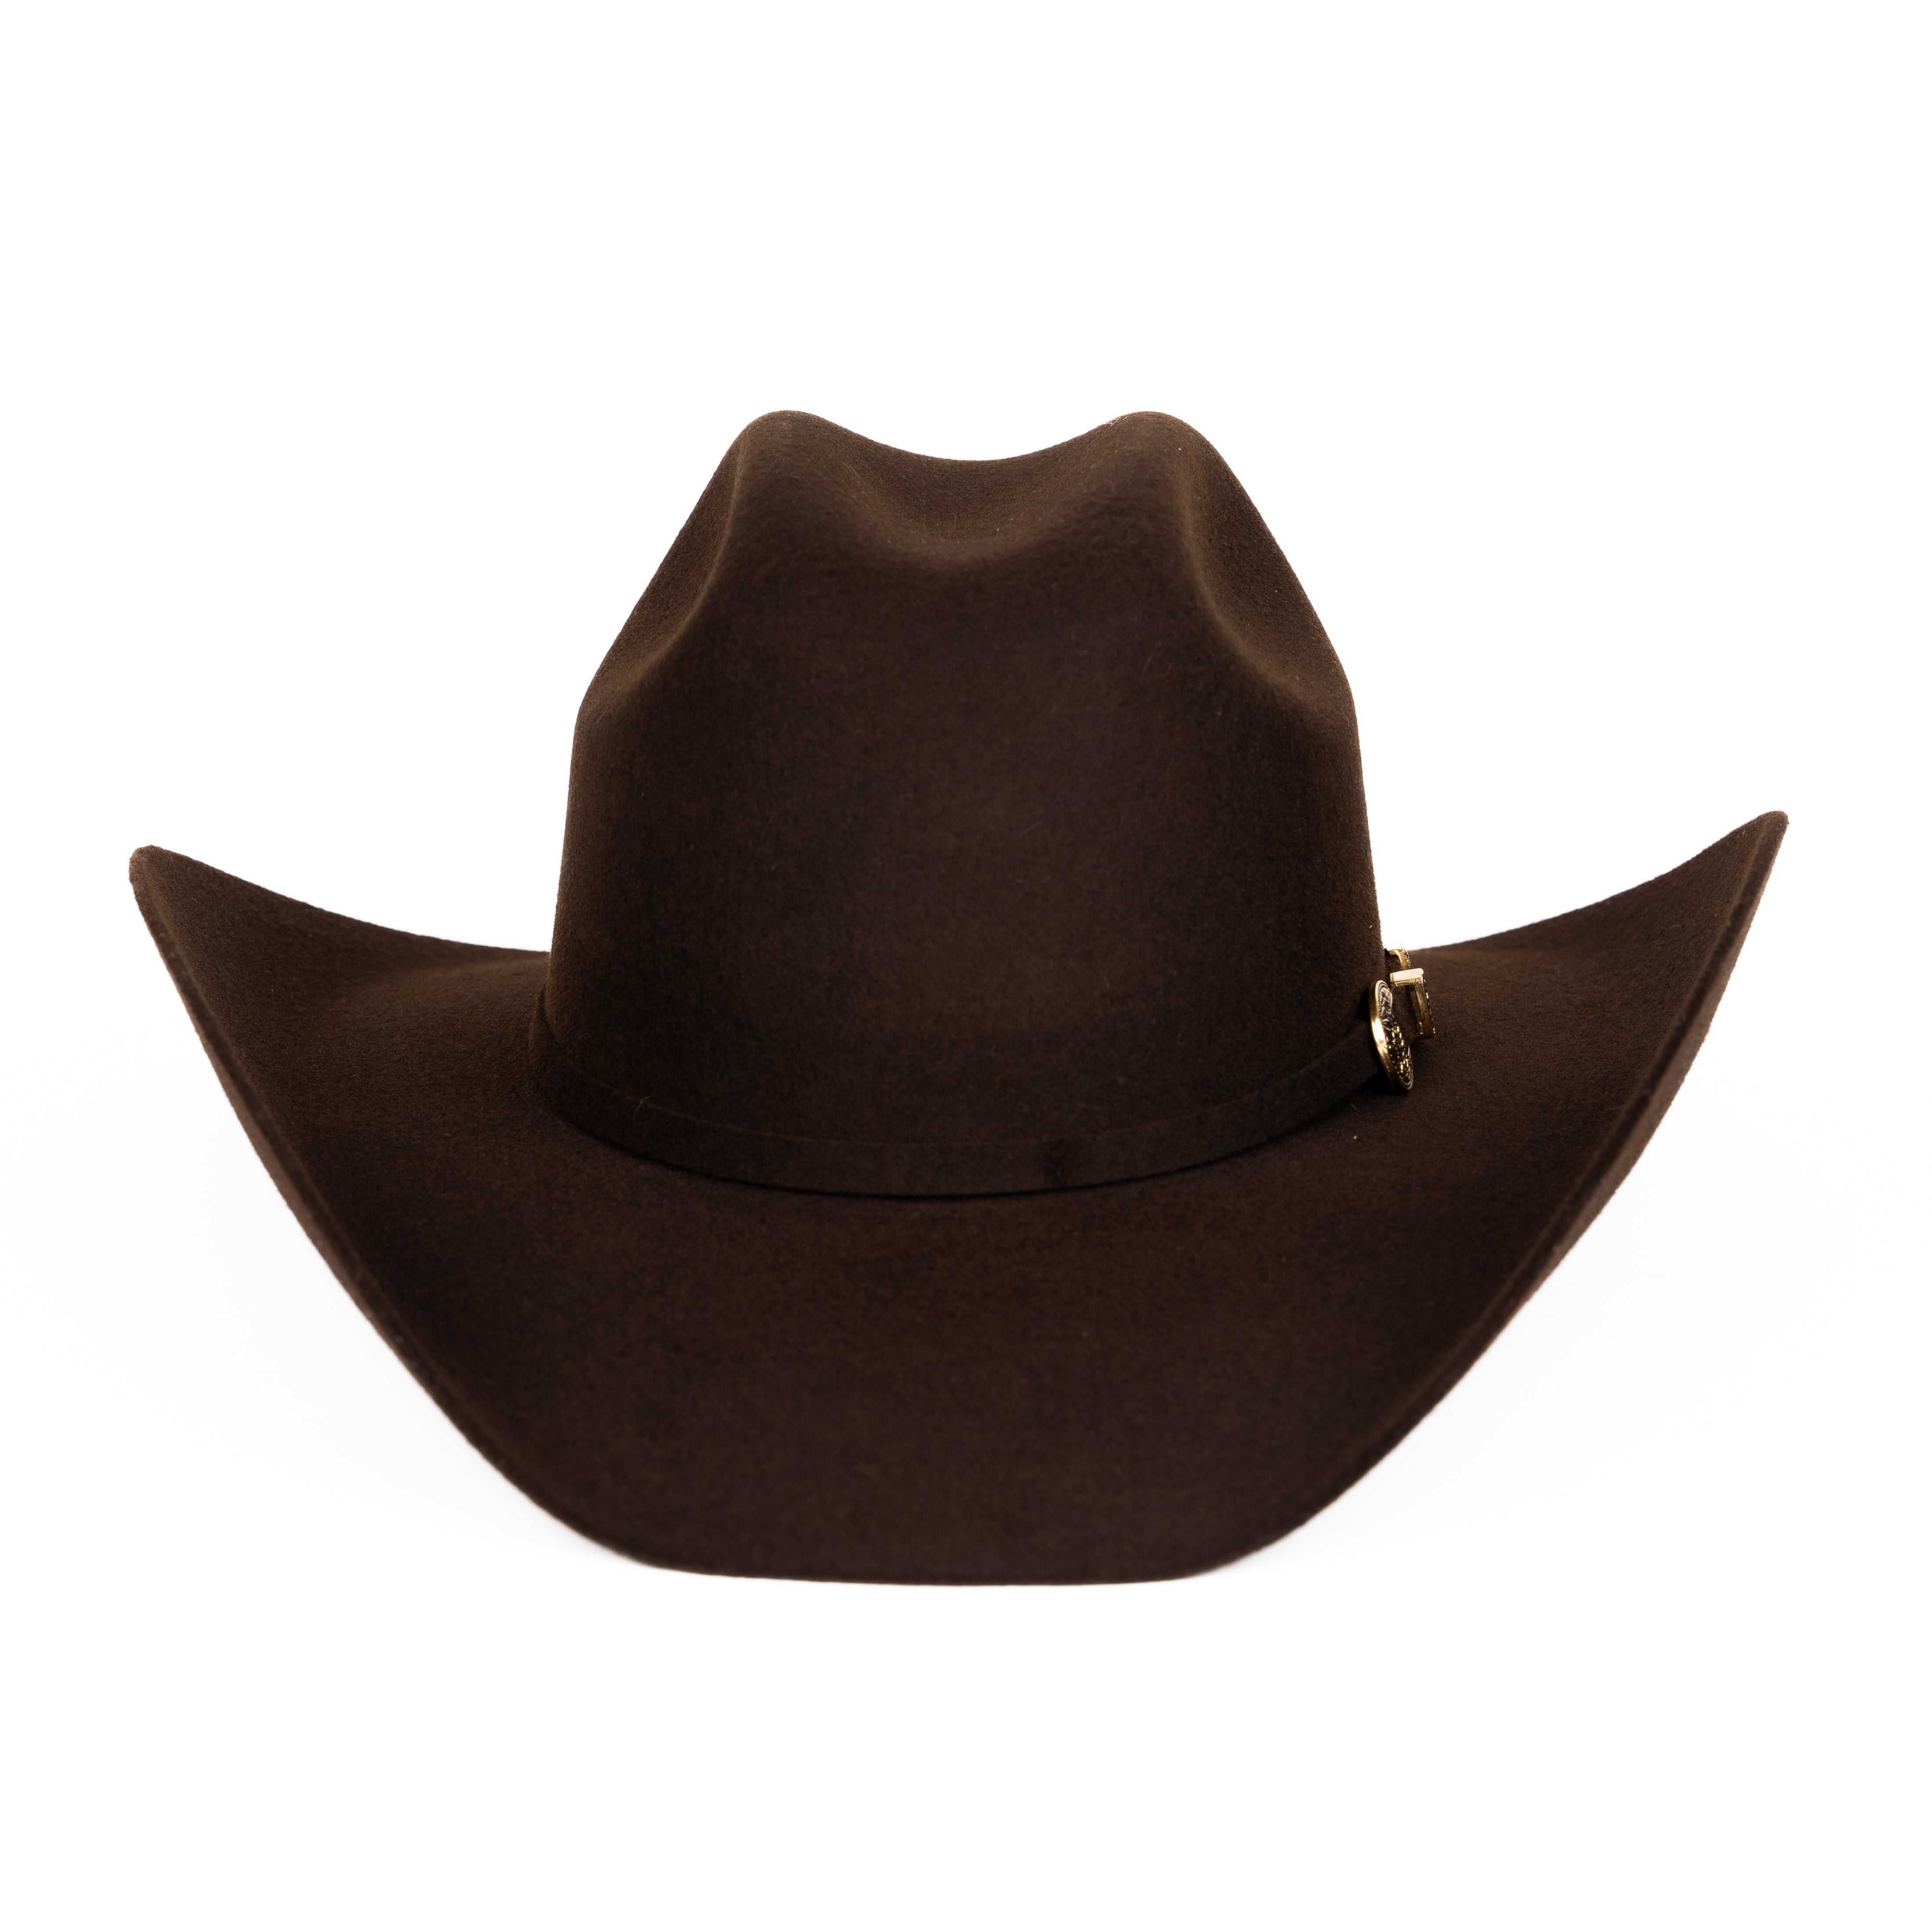 Sombrero Vaquero 30X El Viejon Cafe Tombstone Hats - Sombreros para Hombre